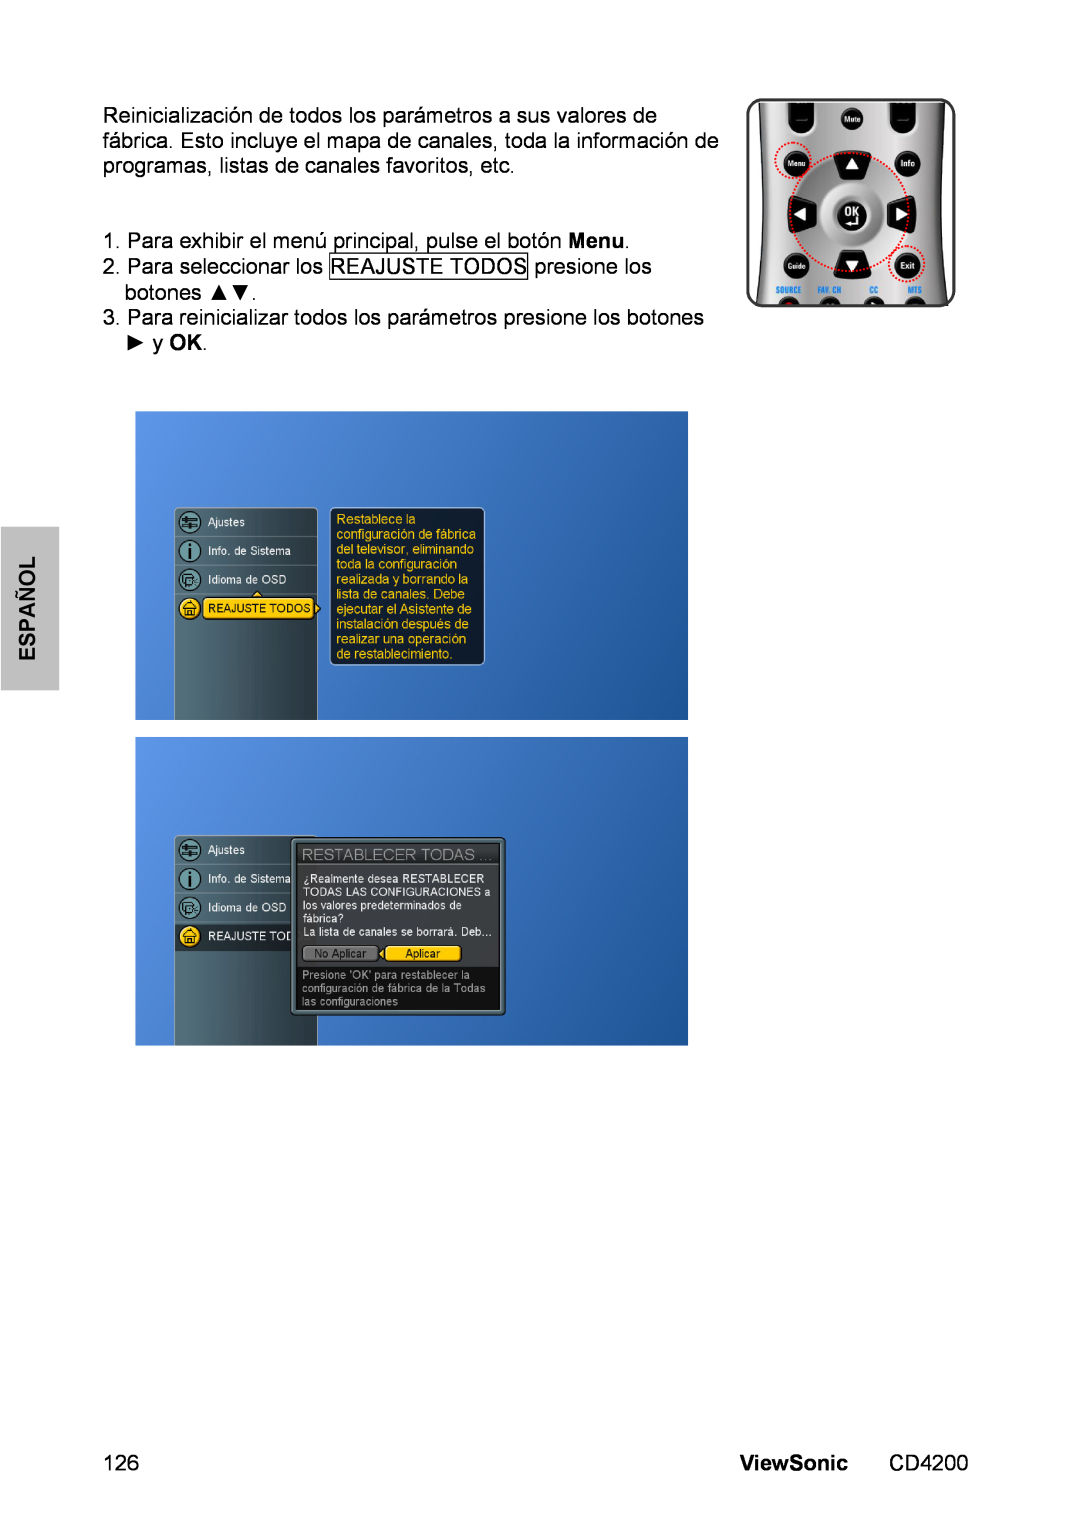 ViewSonic CD4200 manual Para exhibir el menú principal, pulse el botón Menu, Español, ViewSonic 